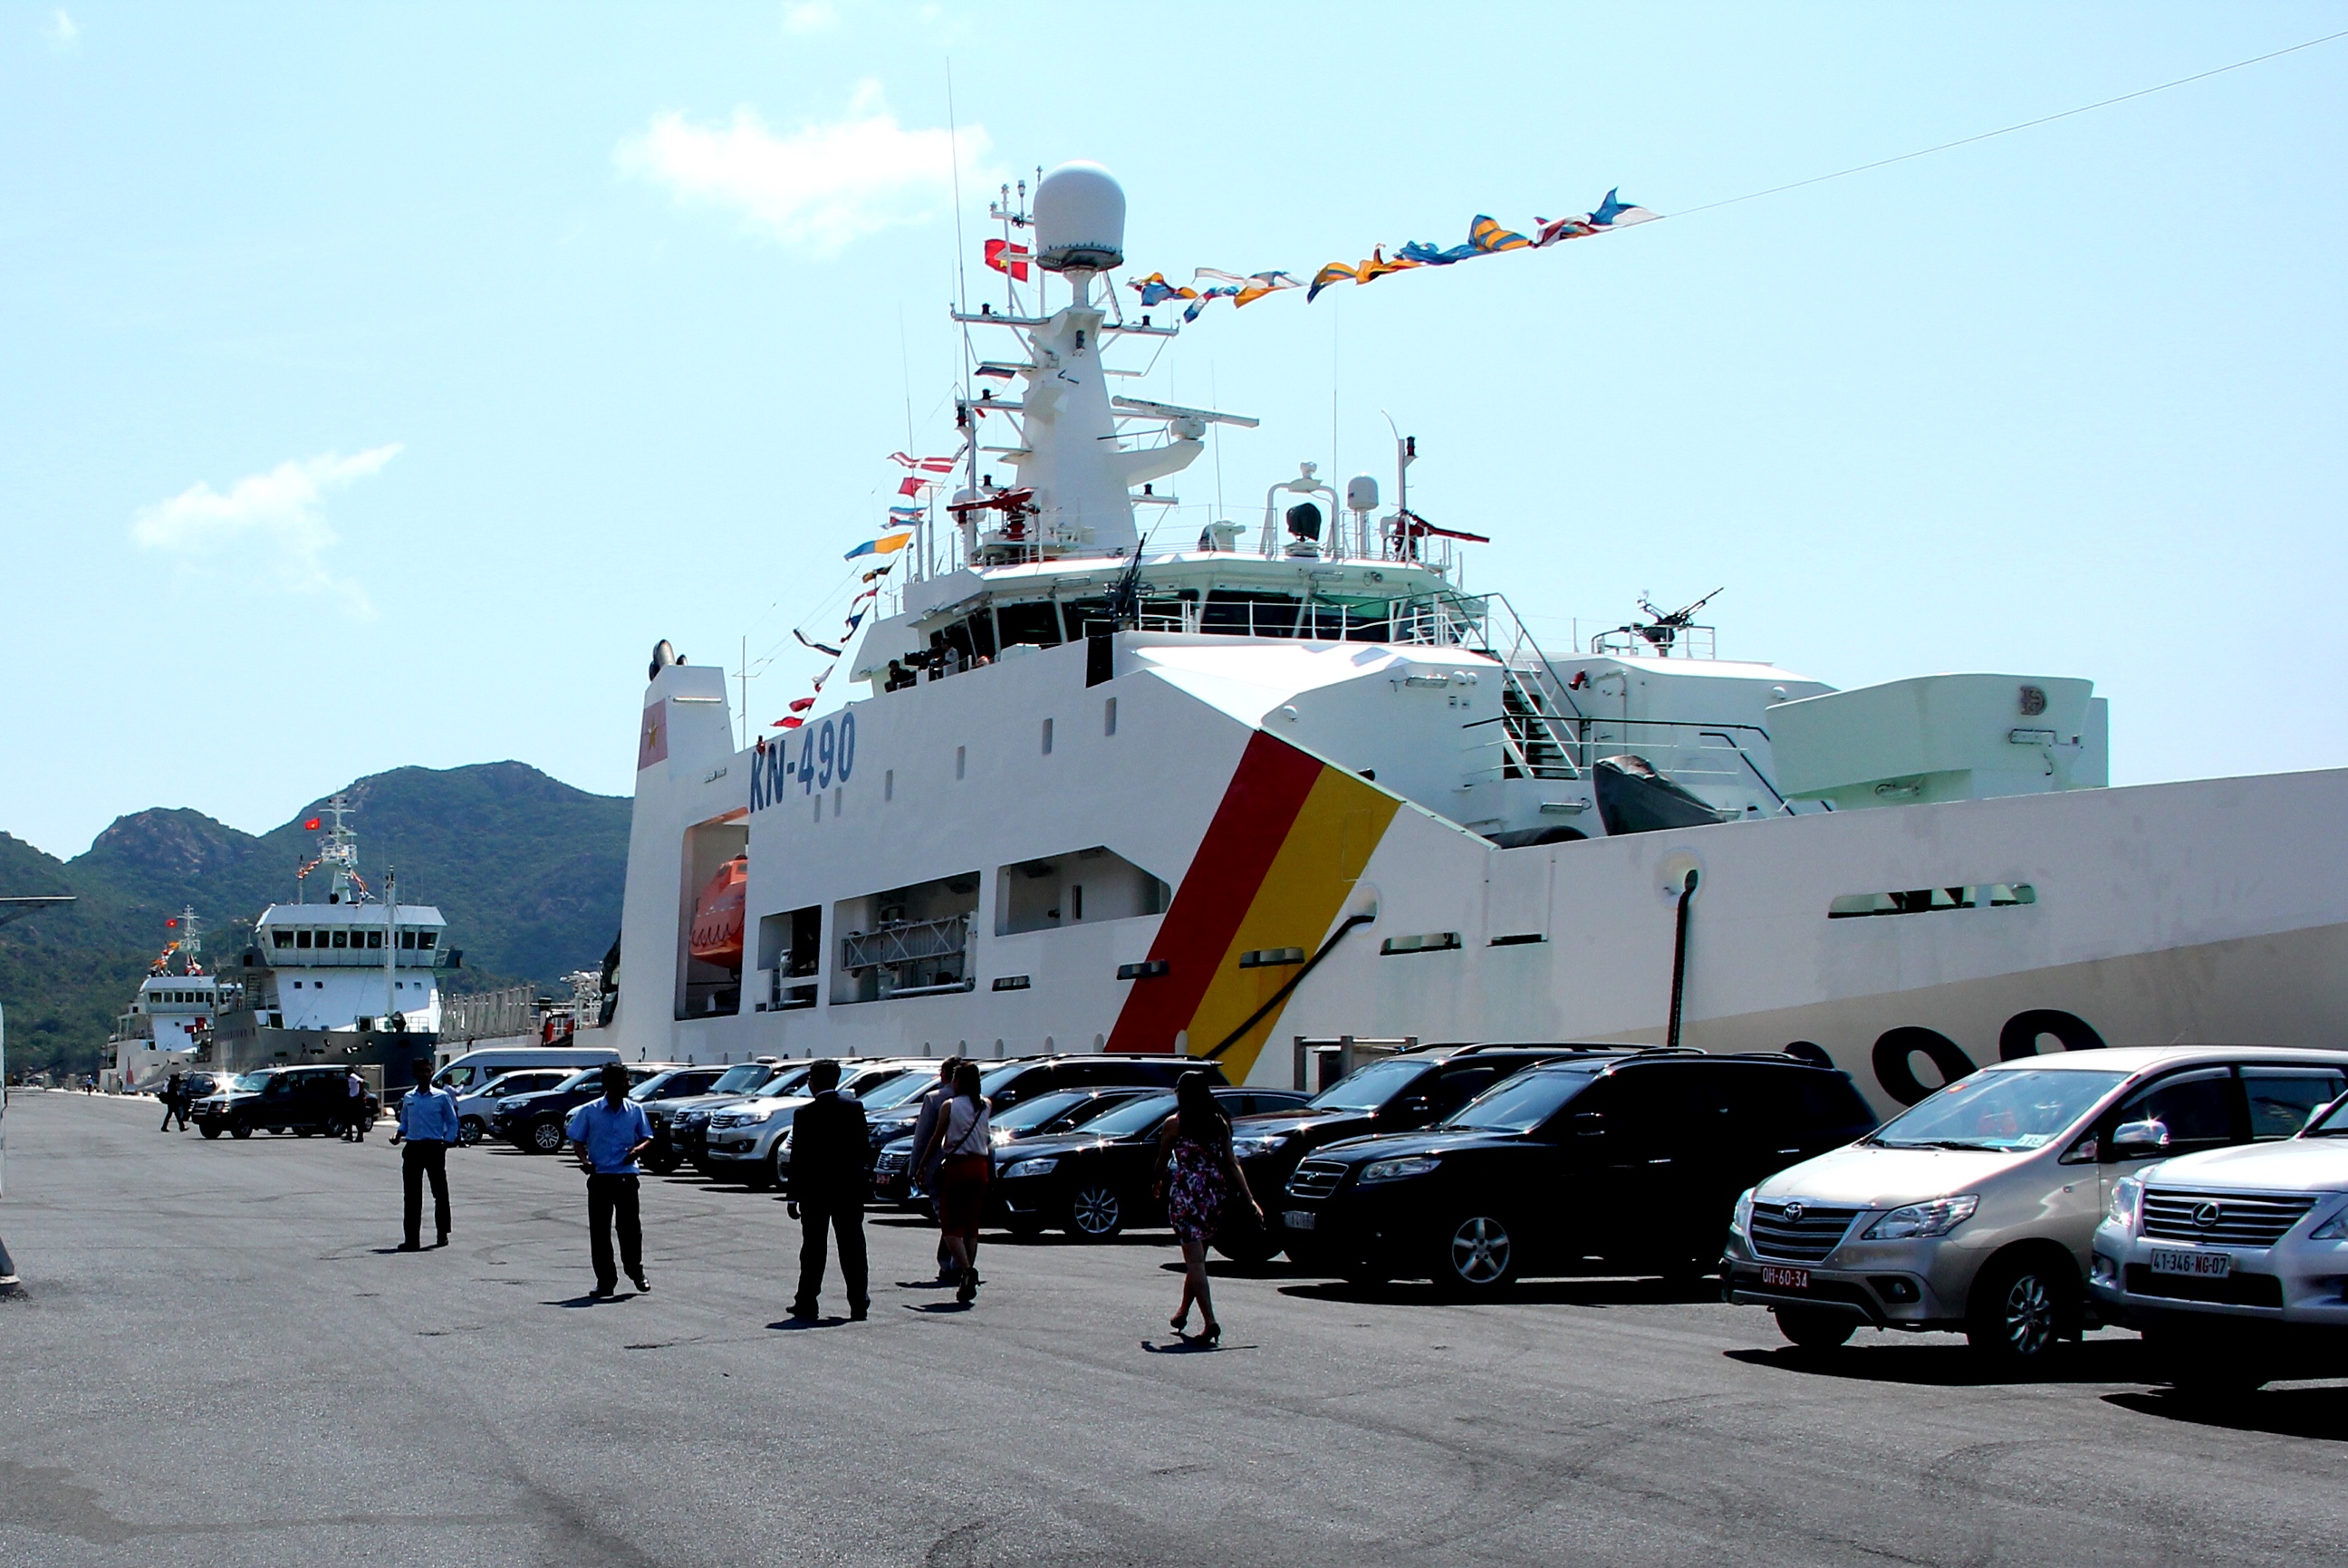 Tàu Kiểm ngư 490 neo đậu tại Cảng Quốc tế Cam Ranh - Ảnh: Bùi Văn Xuân